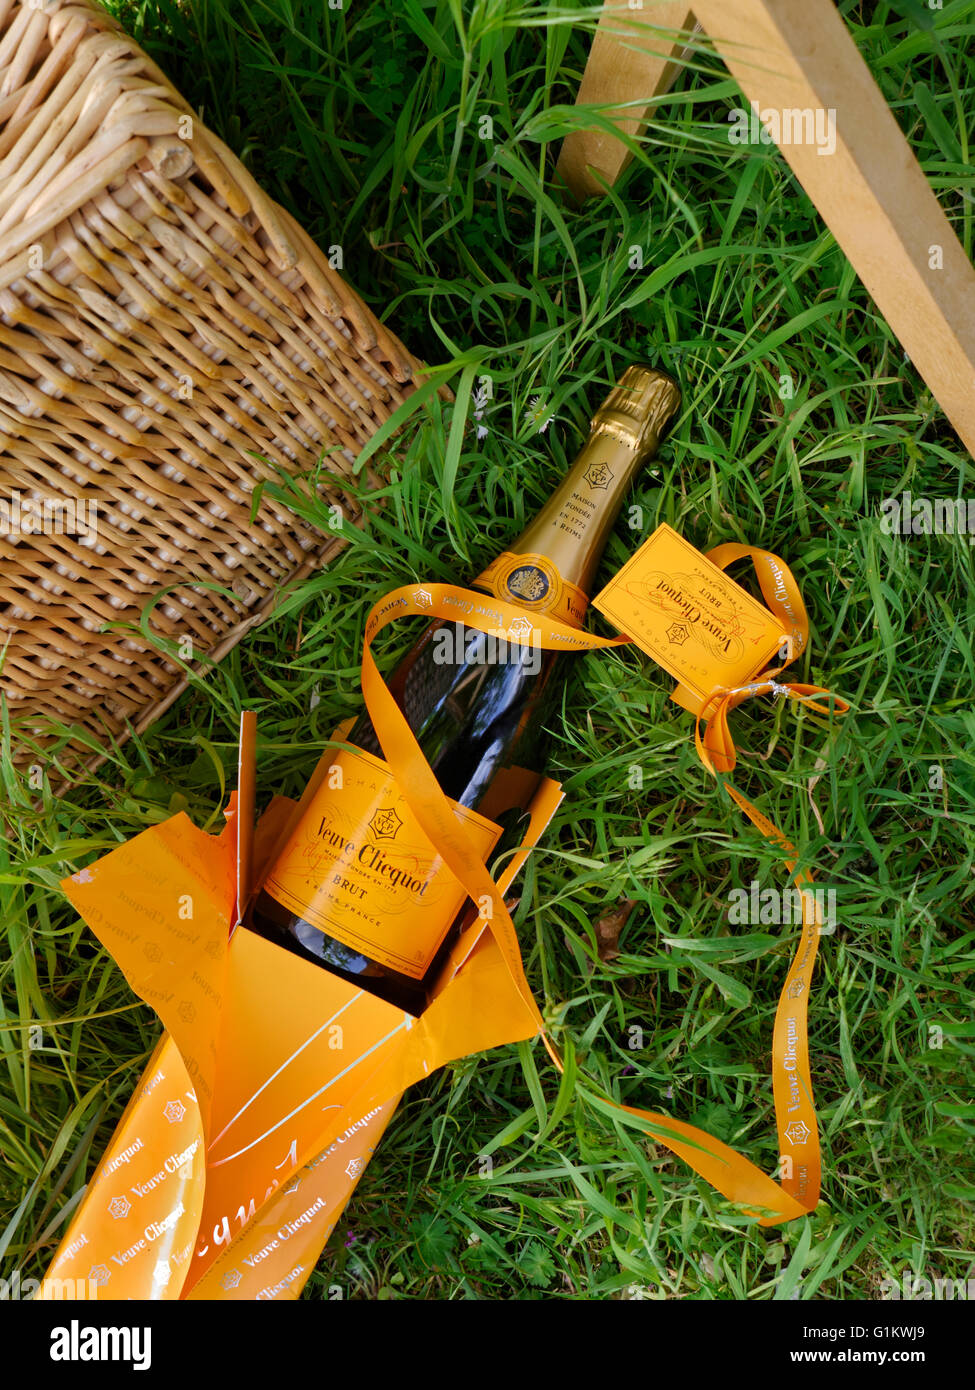 Veuve Clicquot Champagne de luxe & présentation fort & ruban avec panier de pique-nique en plein air dans le jardin verdoyant Banque D'Images